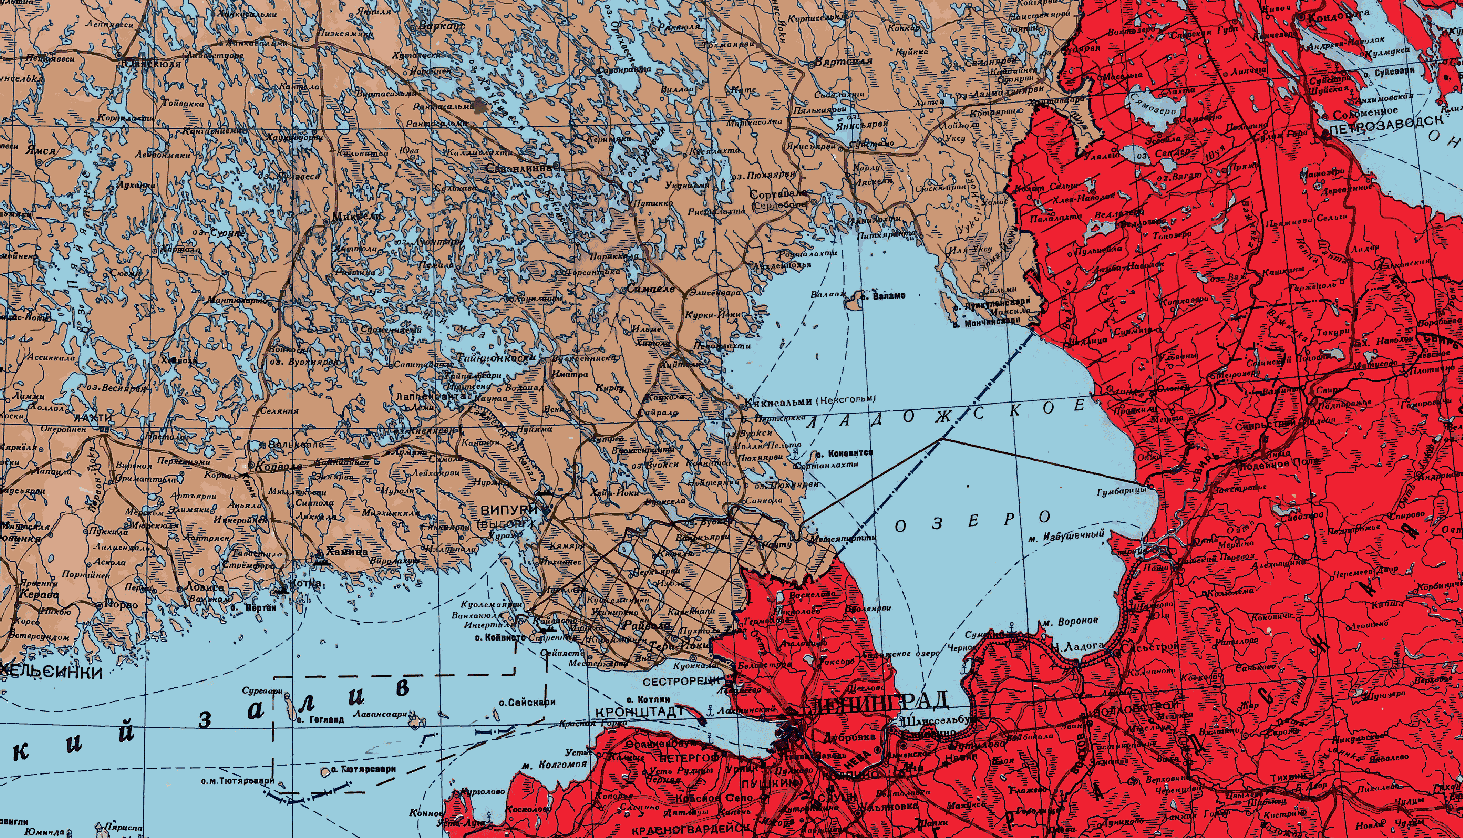 Граница финляндии до 1939 года. Граница СССР И Финляндии до 1939 года на карте. Советско финская граница до 1939 года карта. Карта границы с Финляндией до 1939 года карта. Граница СССР И Финляндии до 1939 года.